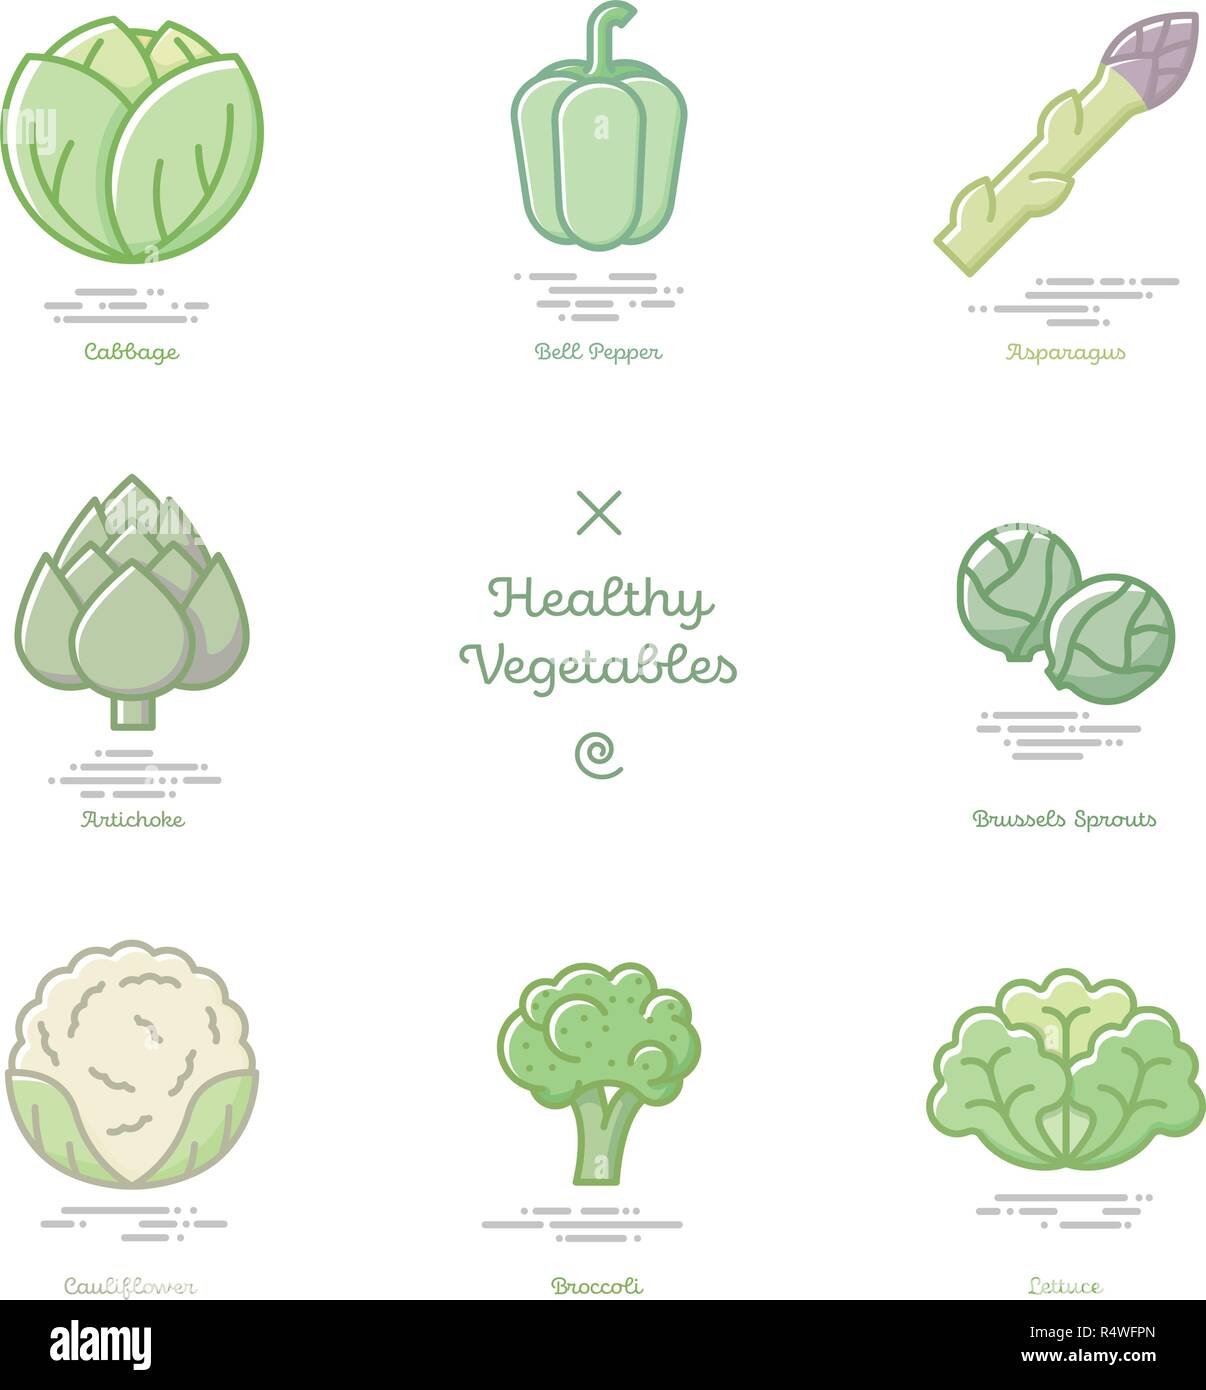 Illustration Vecteur de huit légumes sains y compris le chou, asperges, poivrons, artichaut, choux de Bruxelles, chou-fleur, brocoli et lett Illustration de Vecteur